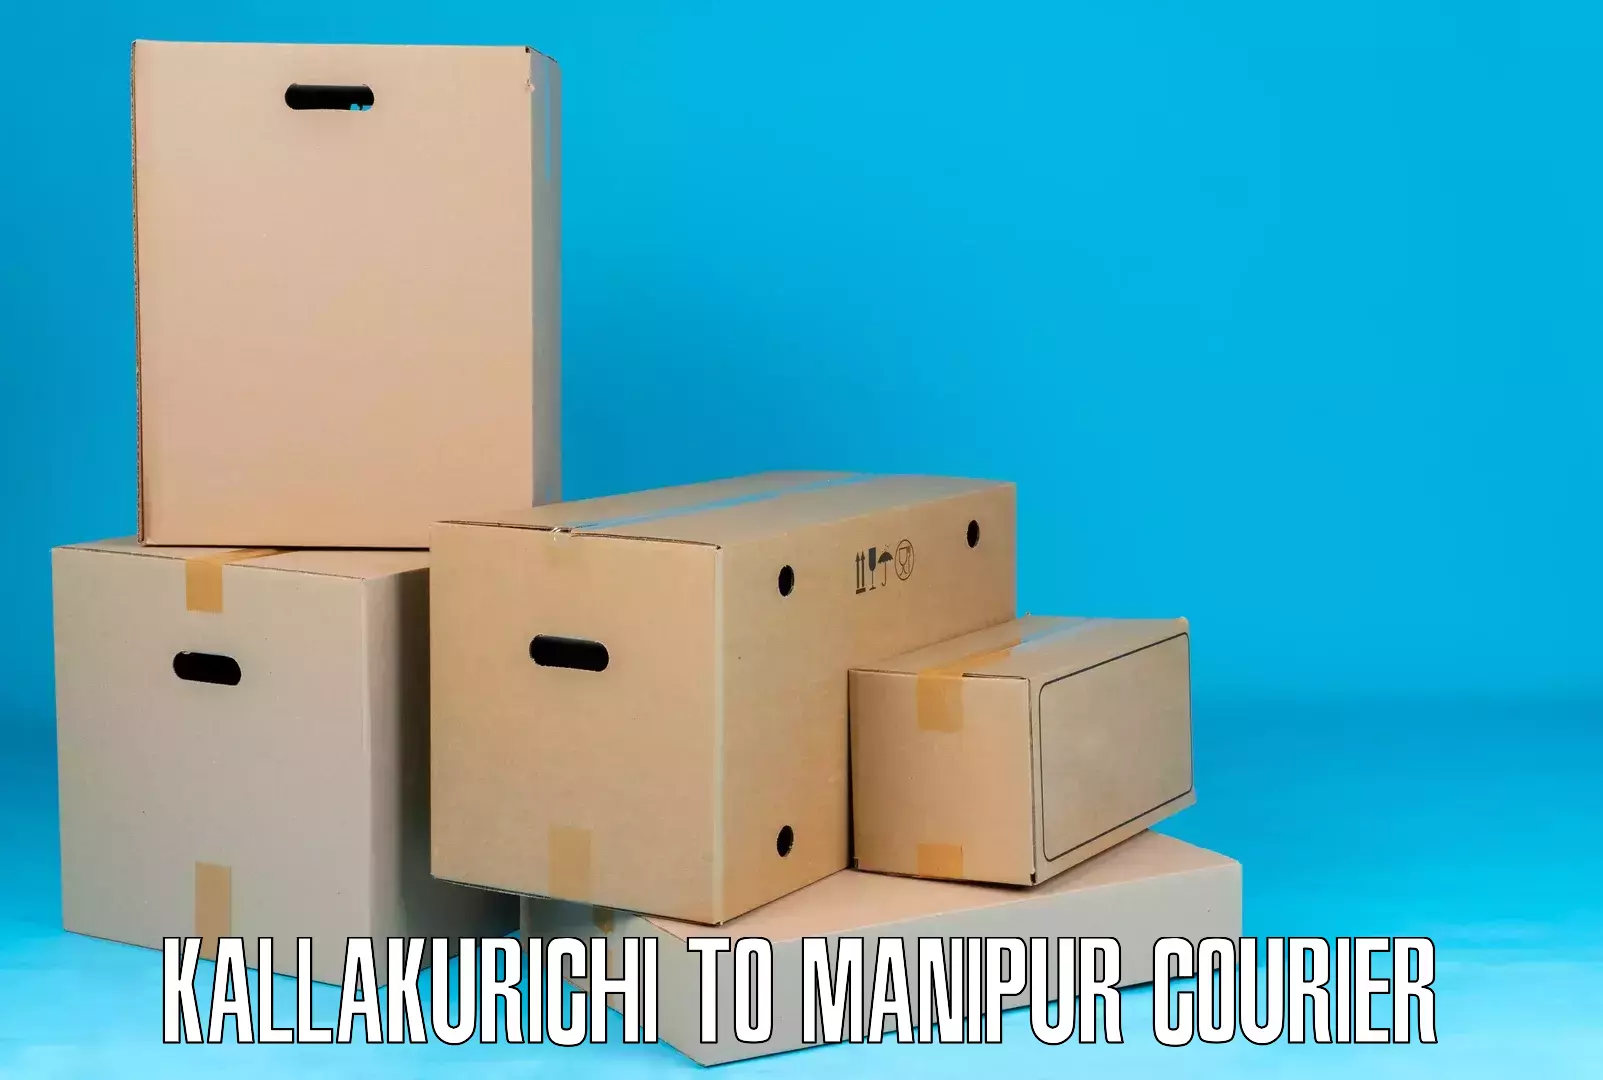 Digital courier platforms Kallakurichi to NIT Manipur